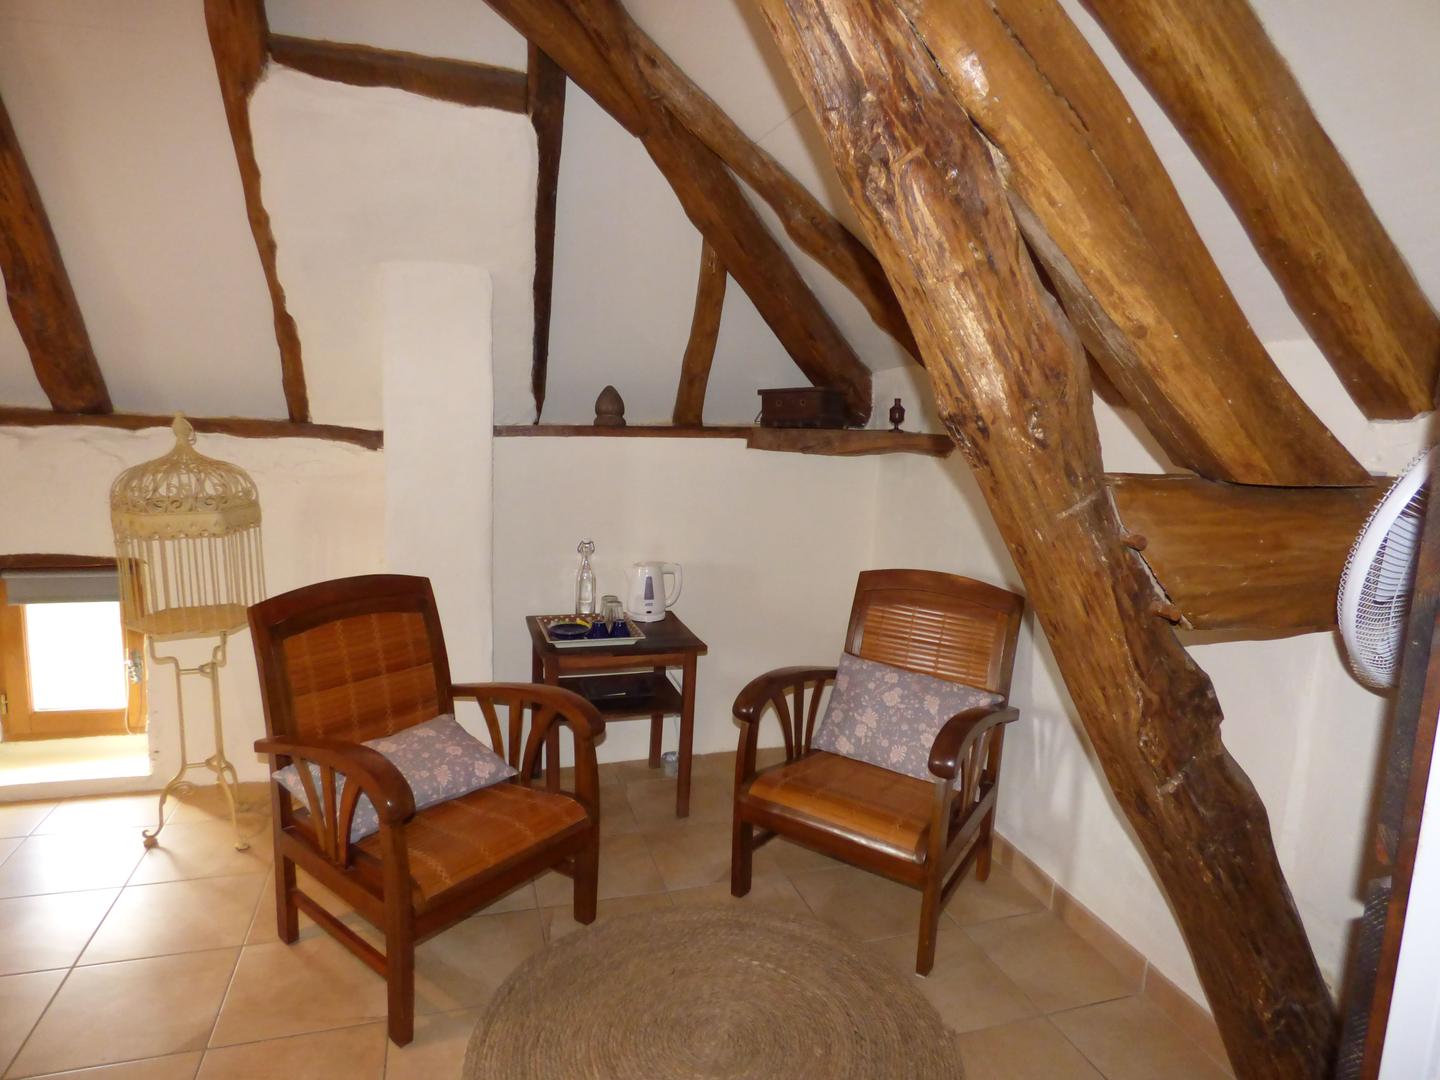 Hôte GreenGo: BRITAVIT Chambres et table d'Hôtes en Périgord - Image 49